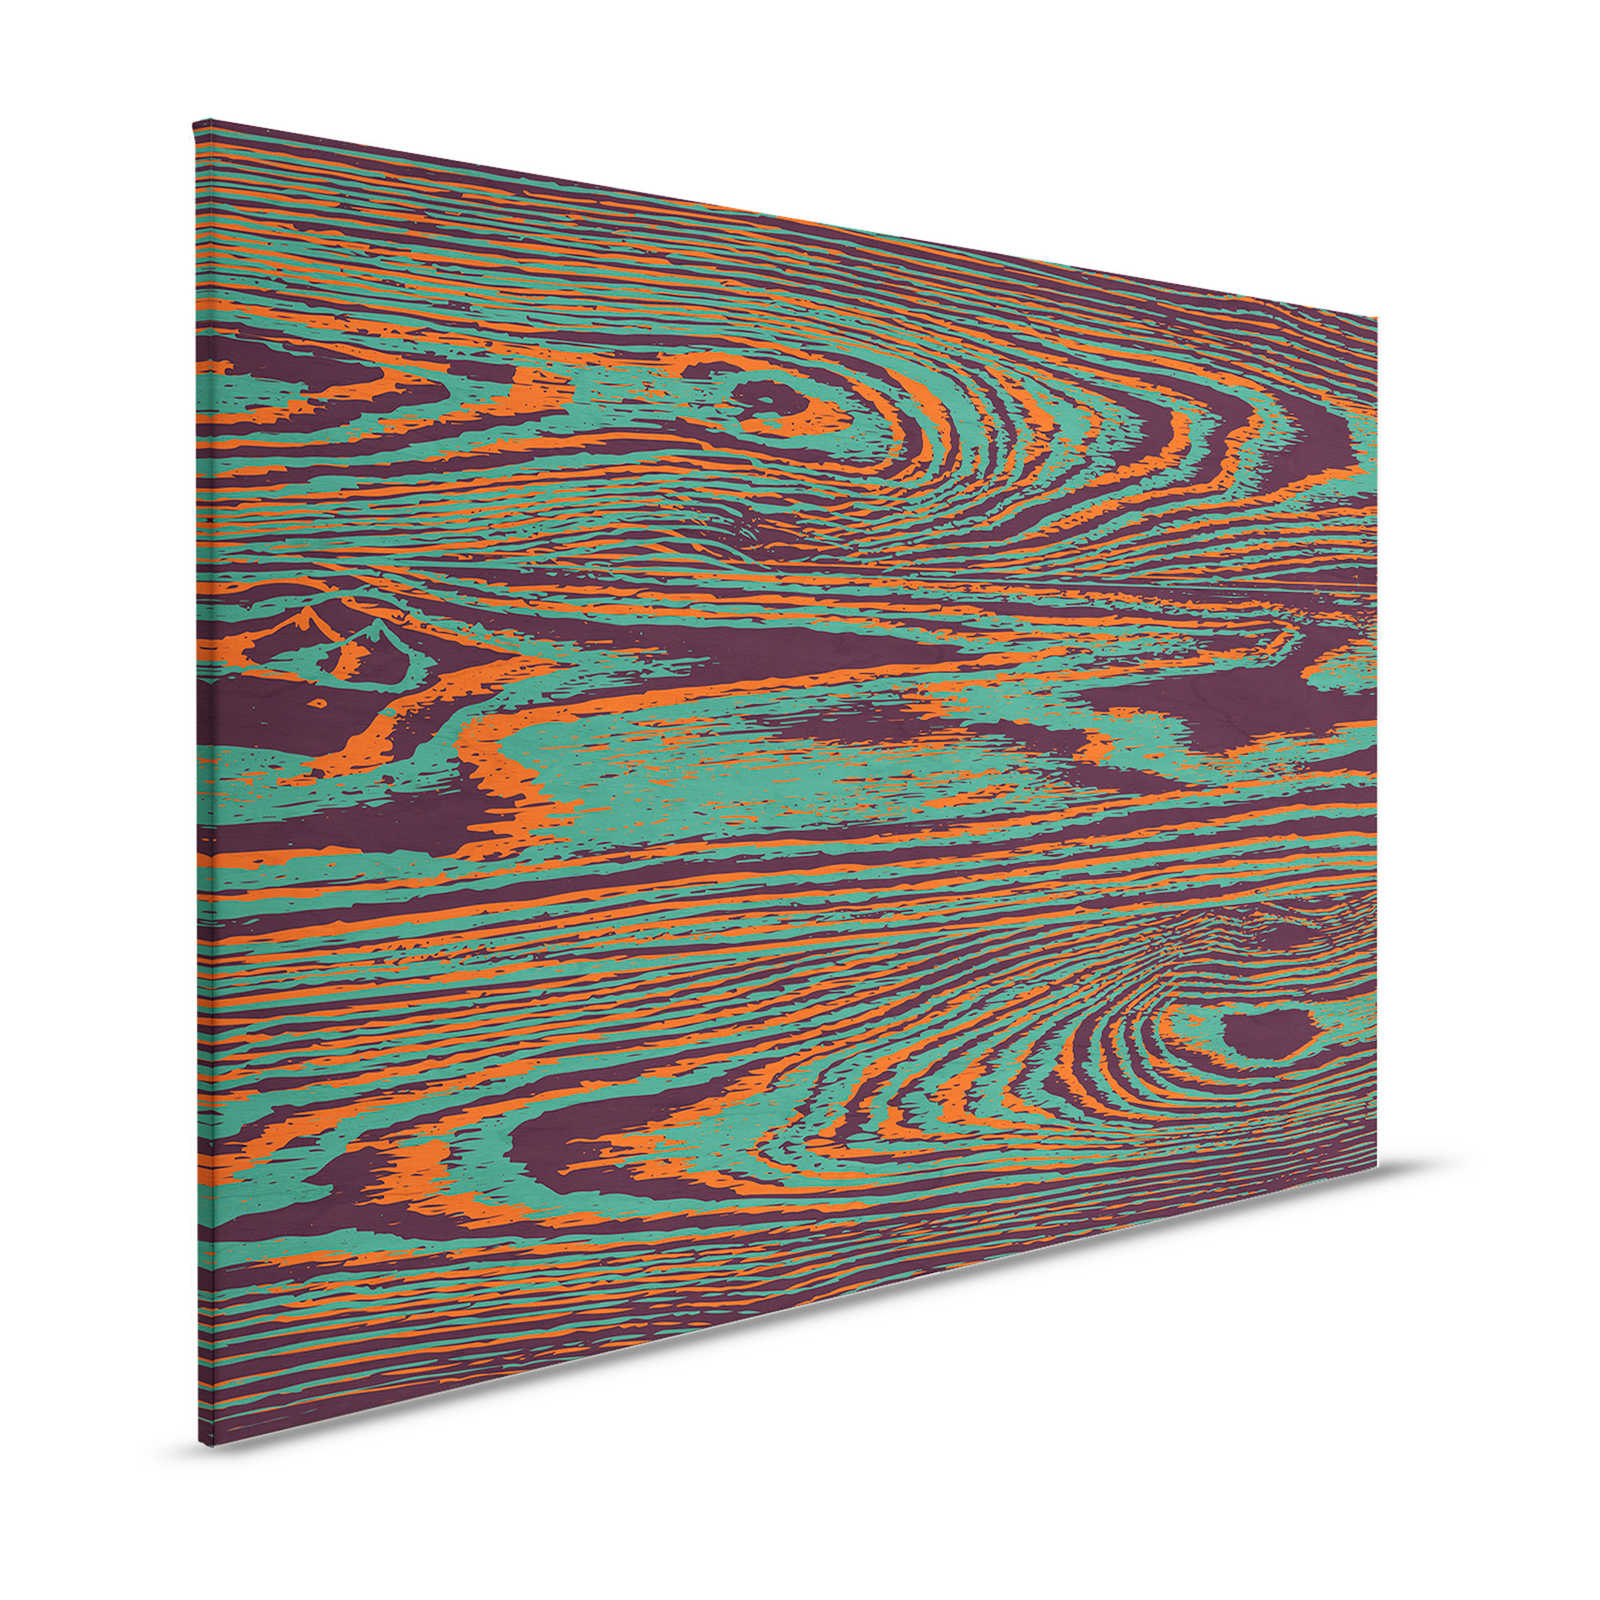 Kontiki 1 - Toile grain de bois couleurs néon, vert & noir - 1,20 m x 0,80 m
